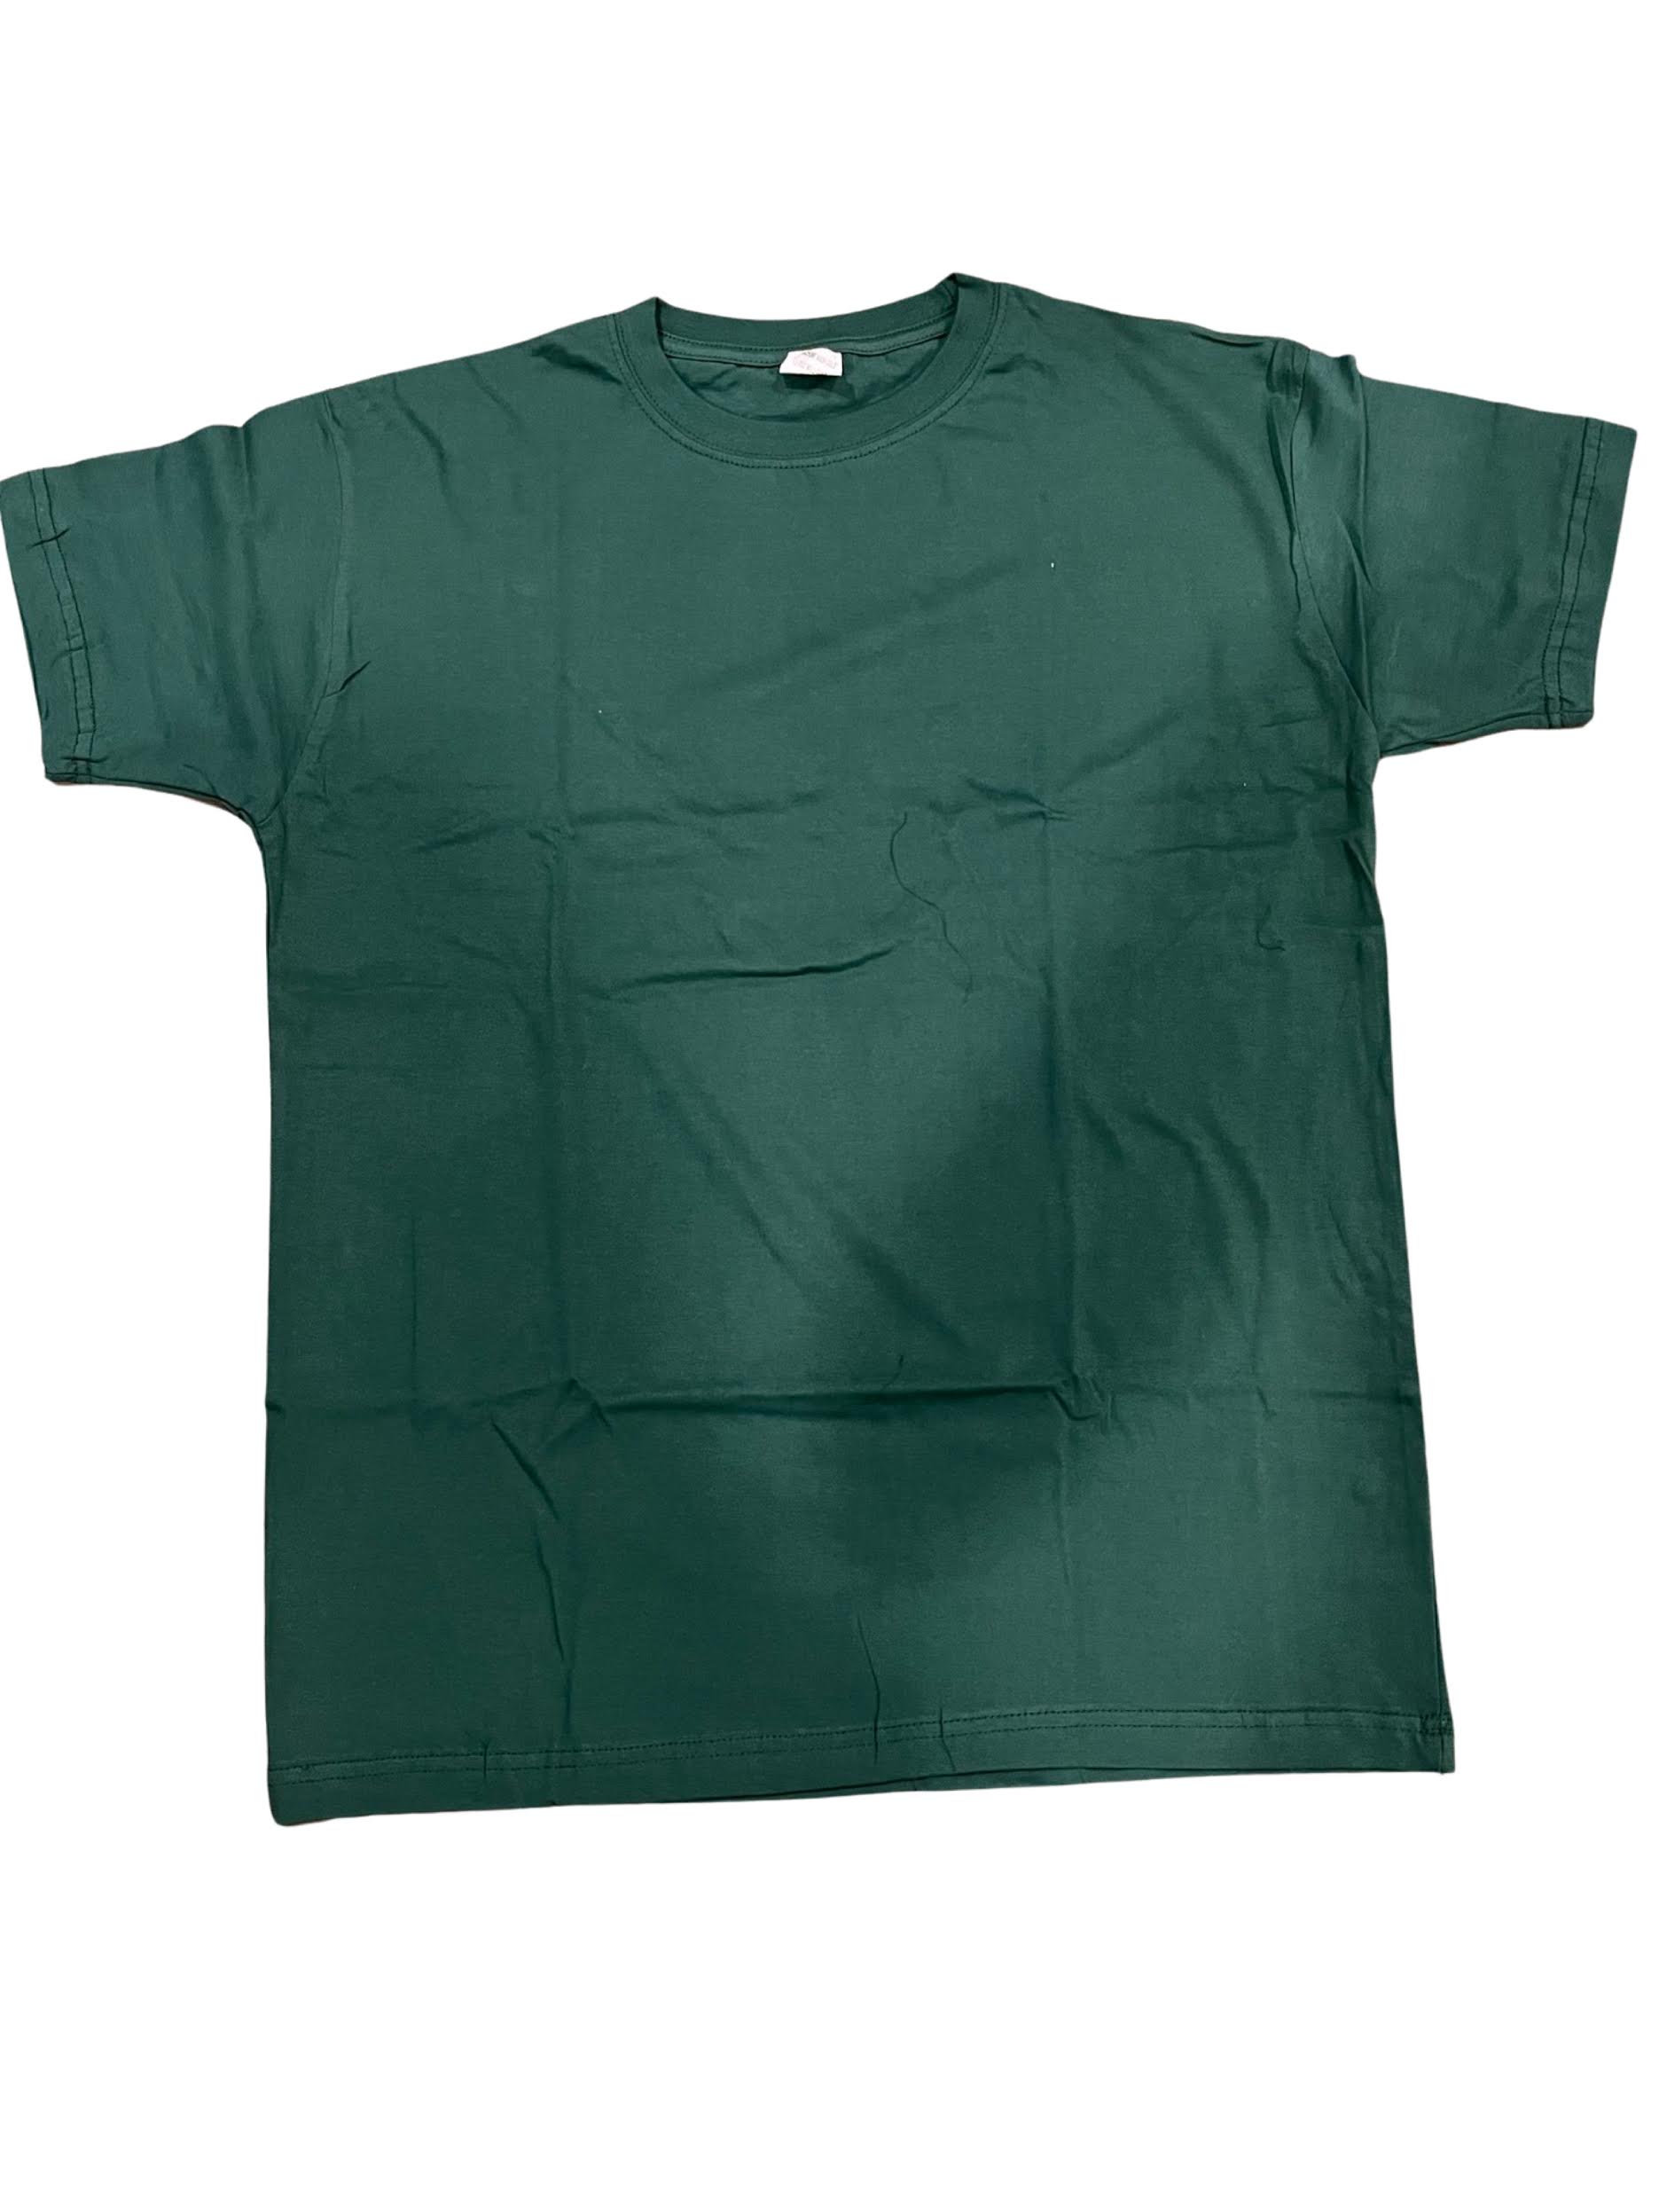 Forest Green Short Sleeve T-shirt